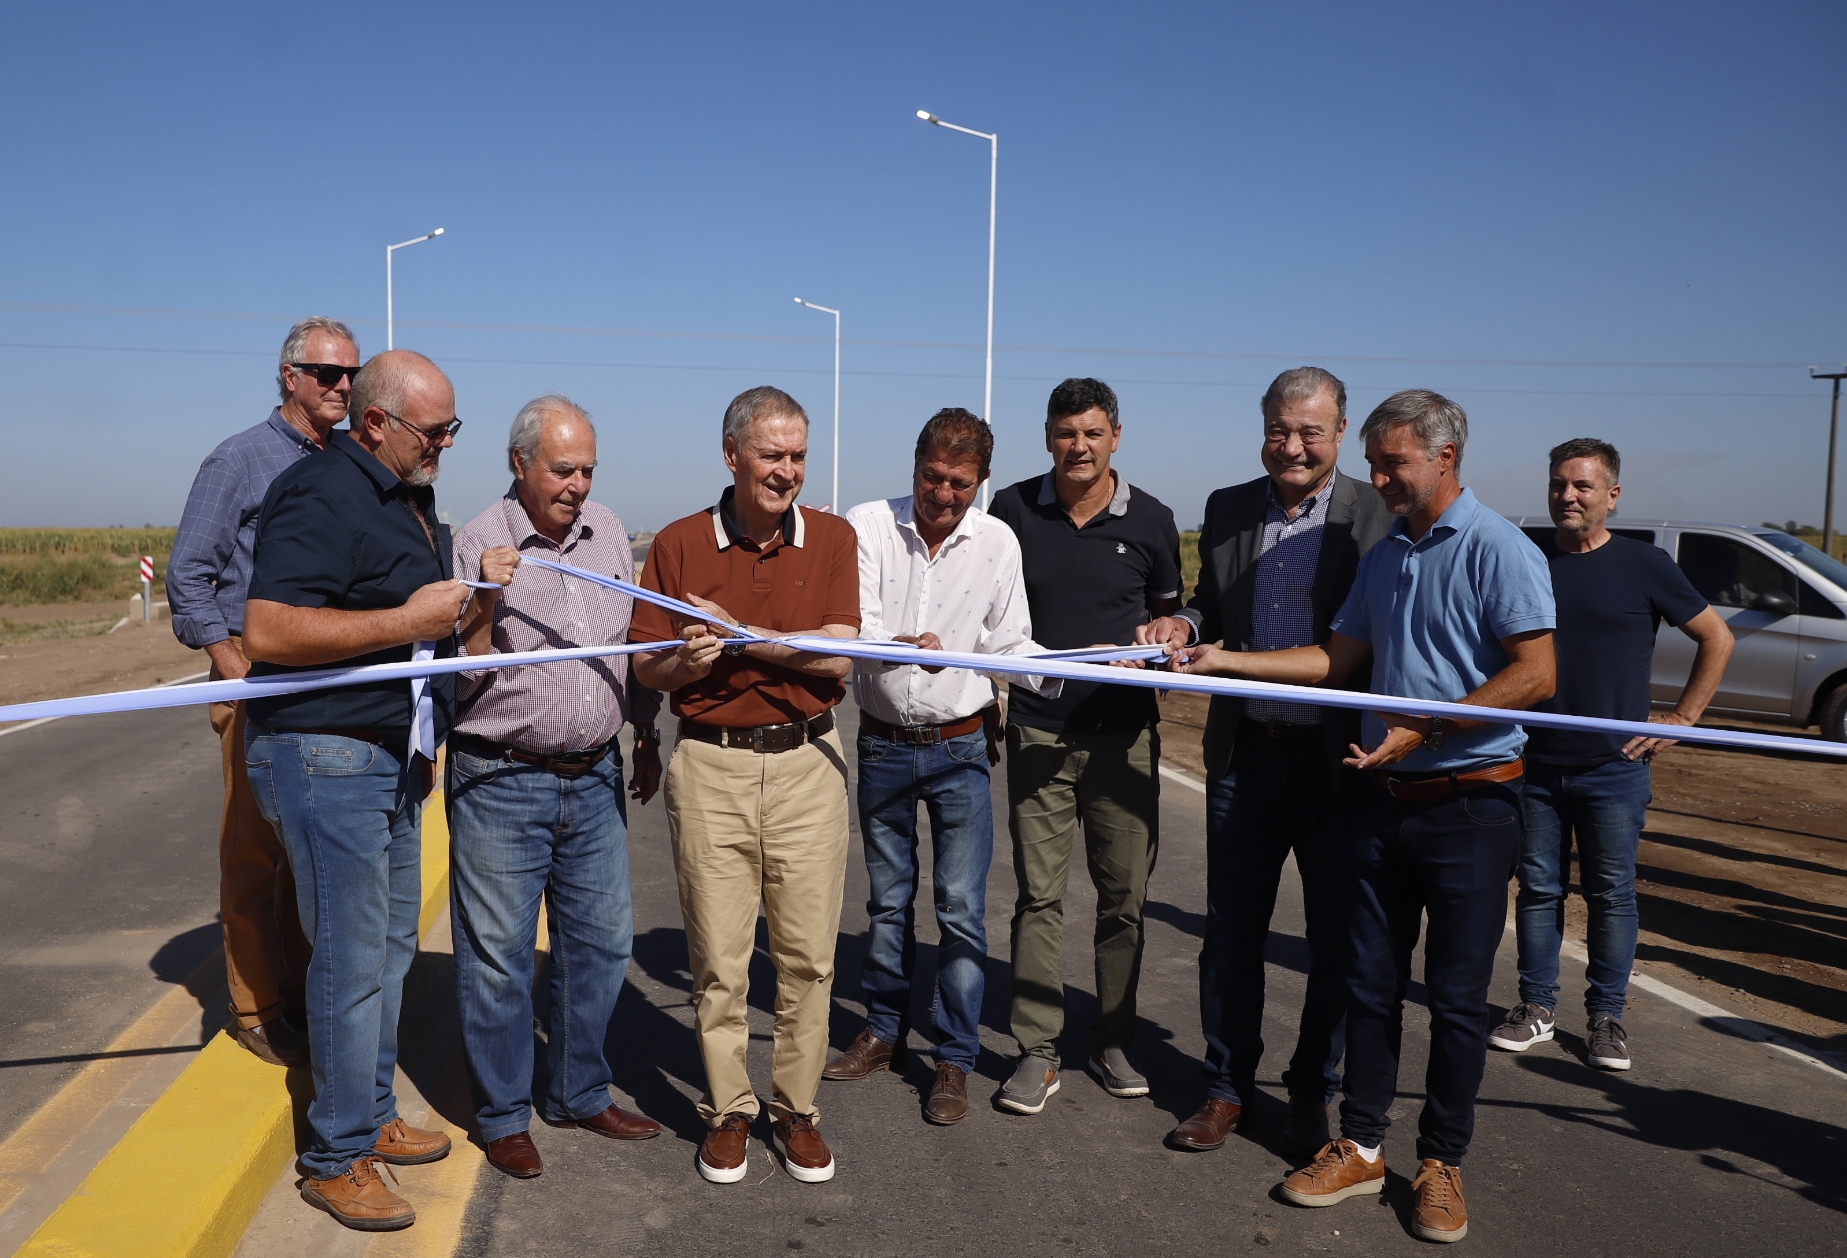 Colonia Videla: Schiaretti inauguró la pavimentación de la ruta S 353